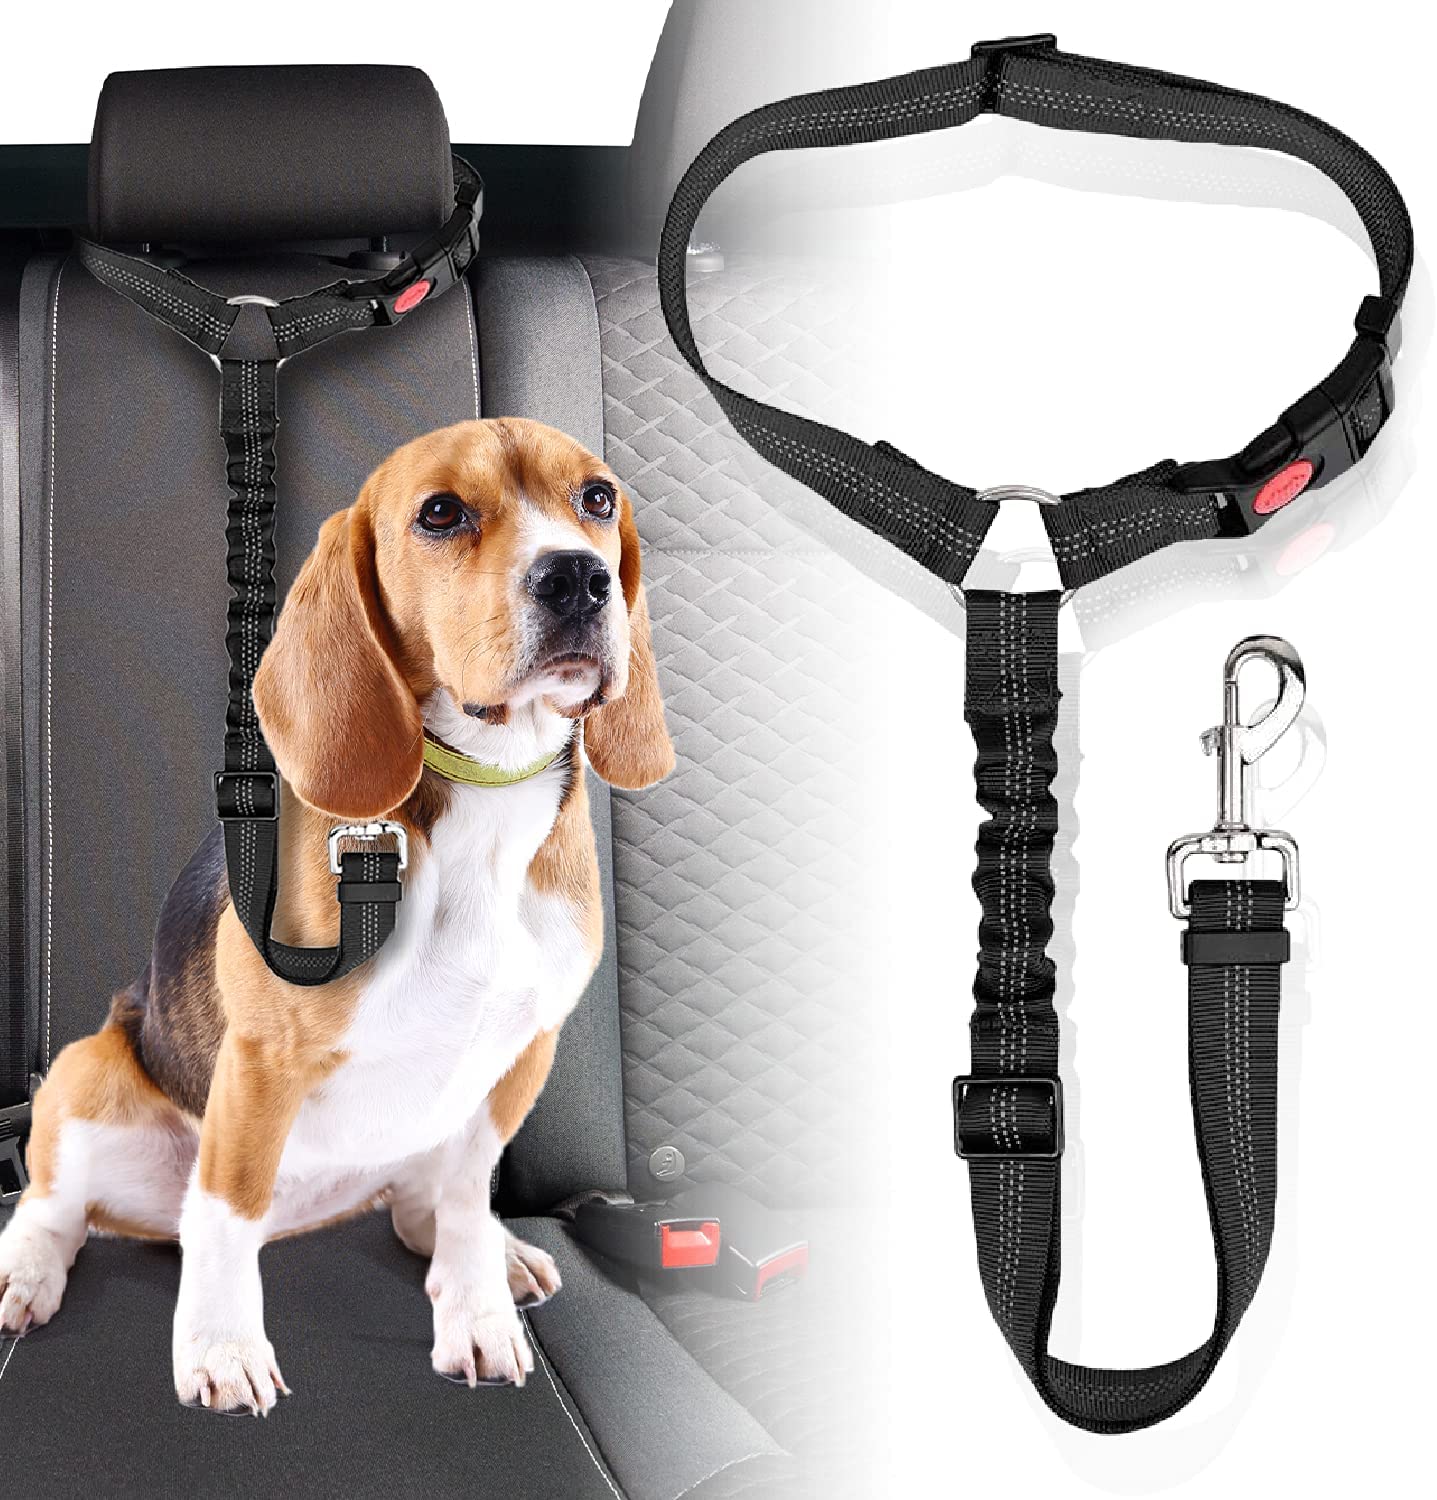 【獣医師監修の安心設計】ペット専門店 が 本気で作った 犬 シートベルト で、安全面への配慮が細部まで施されています。【シートベルト調整可能な80cm】 犬猫工房 の 犬用 シートベルト は、ペットのことを第一に設計されています。 大型犬 でもゆとりをもって装着できる シートベルト です。【取り外しカンタン】 犬用 シートベルト には 360度フック を採用しています。取り外しがカンタンな 犬猫兼用 の シートベルト なので、飼い主さんも安心です。散歩用のリードとしてもお使いいただけます。【ロック機能・伸縮素材で不慮の事故を予防】 ペット の急な飛び出しも 犬用シートベルト の ロック機能 で 予防 できます。伸縮性の高い素材を採用しているため、急ブレーキによるワンちゃんへの負担を軽減可能です。★★★関連キーワード★★★犬用 シートベルト 【獣医師監修】 ペット用 犬 シートベルト ドライブシート 『長さ調整可能な80センチ』 犬猫工房